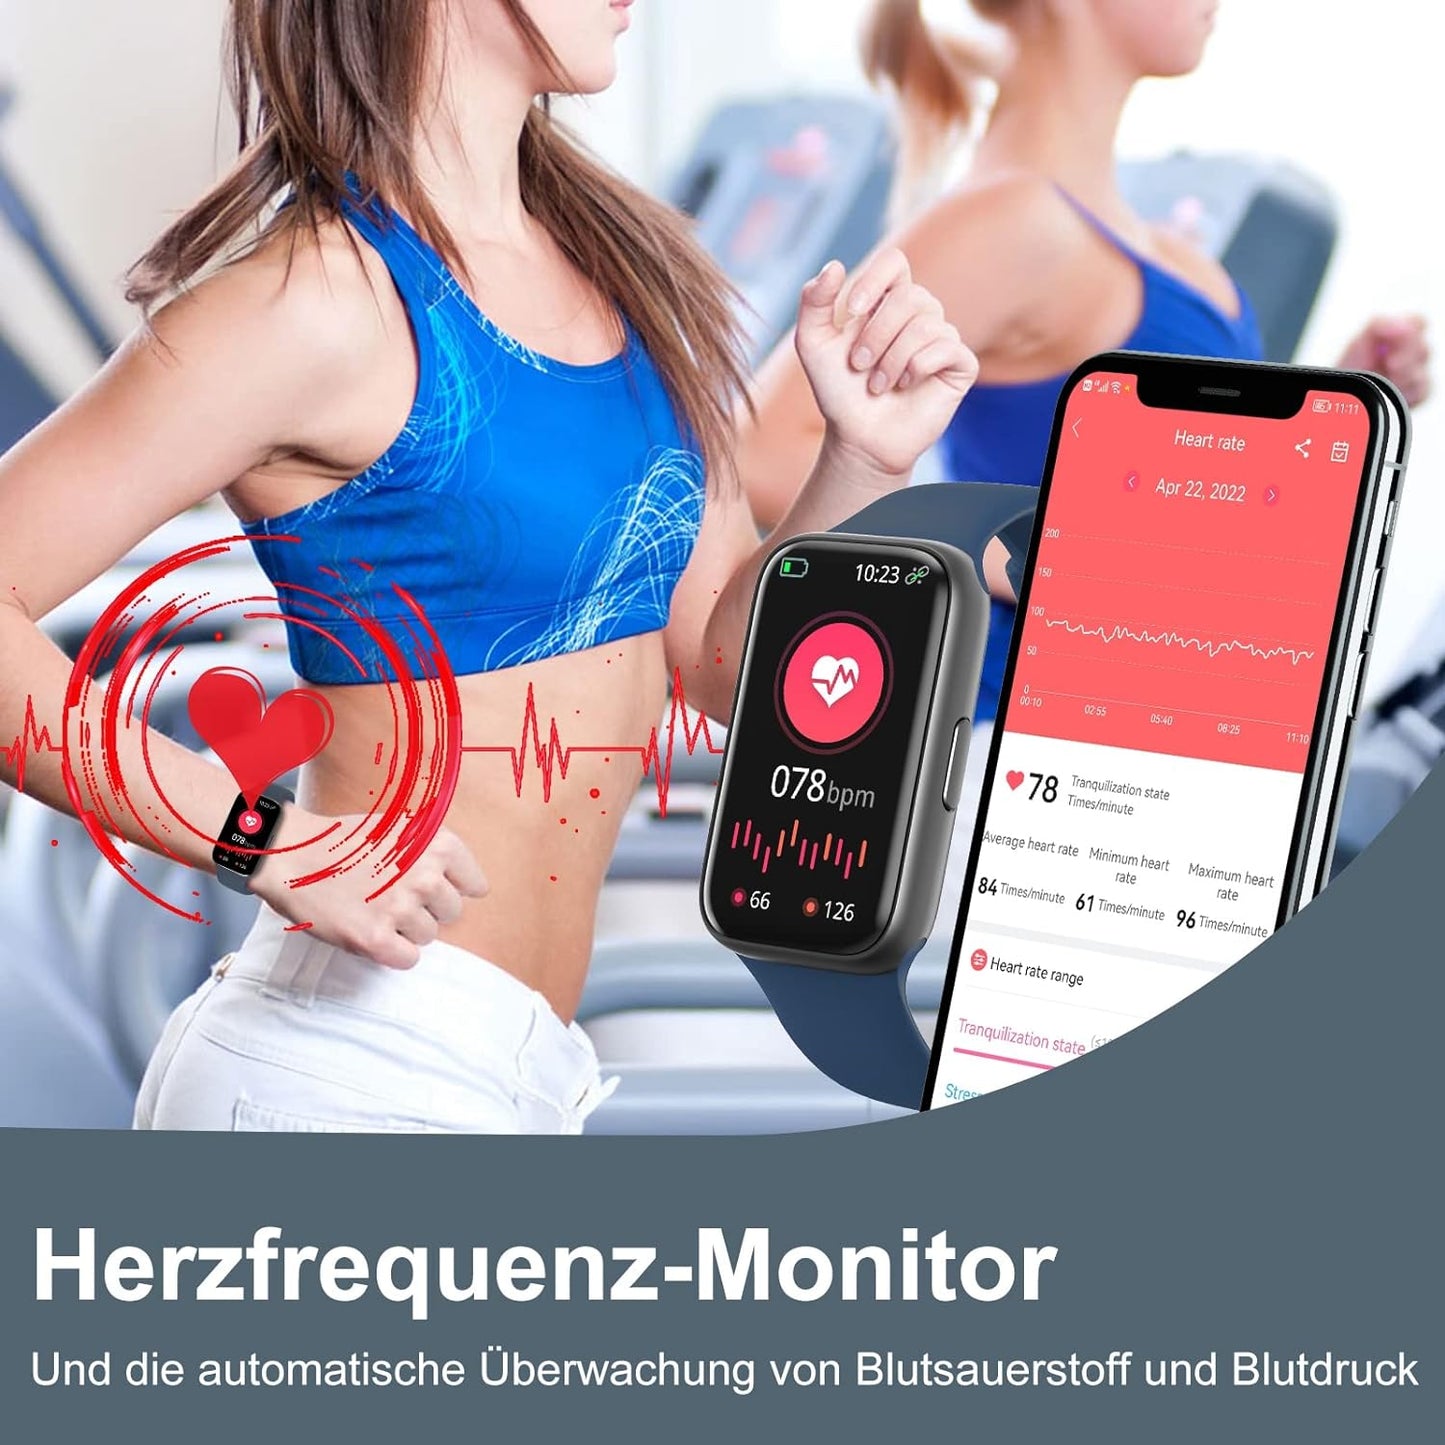 BingoFit Fitness Tracker, Fitness Armband Uhr mit Schrittzähler Uhr Pulsuhr Schlafüberwachung Blutdruck Blutsauerstoff SpO2, 1,47" HD-Farbdisplay 25 Sportmodi Smartwatch für Damen Herren